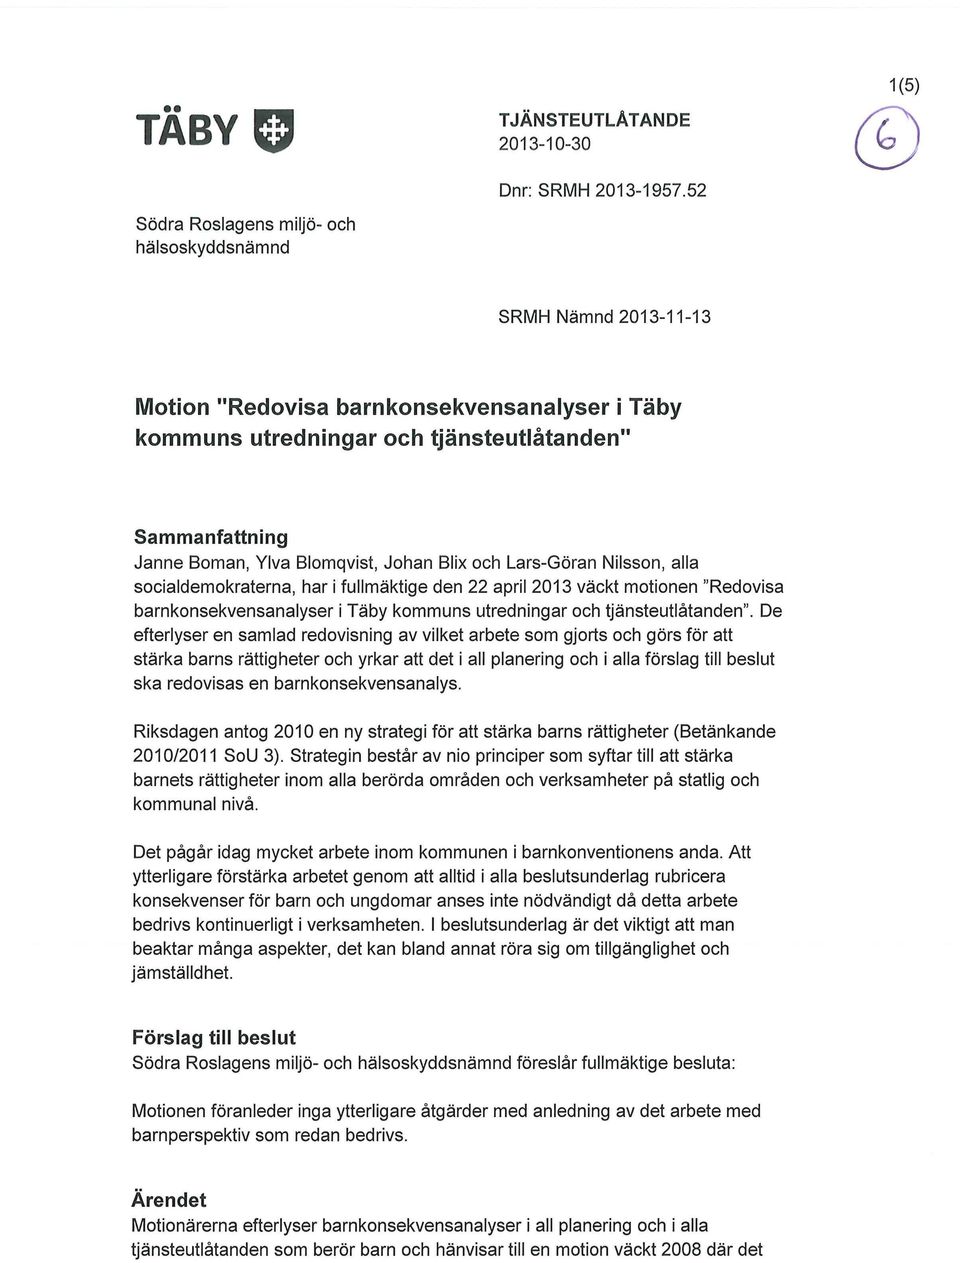 Nilsson, alla socialdemokraterna, har i fullmäktige den 22 april 2013 väckt motionen "Redovisa barnkonsekvensanalyser i Täby kommuns utredningar och tjänsteutlåtanden".